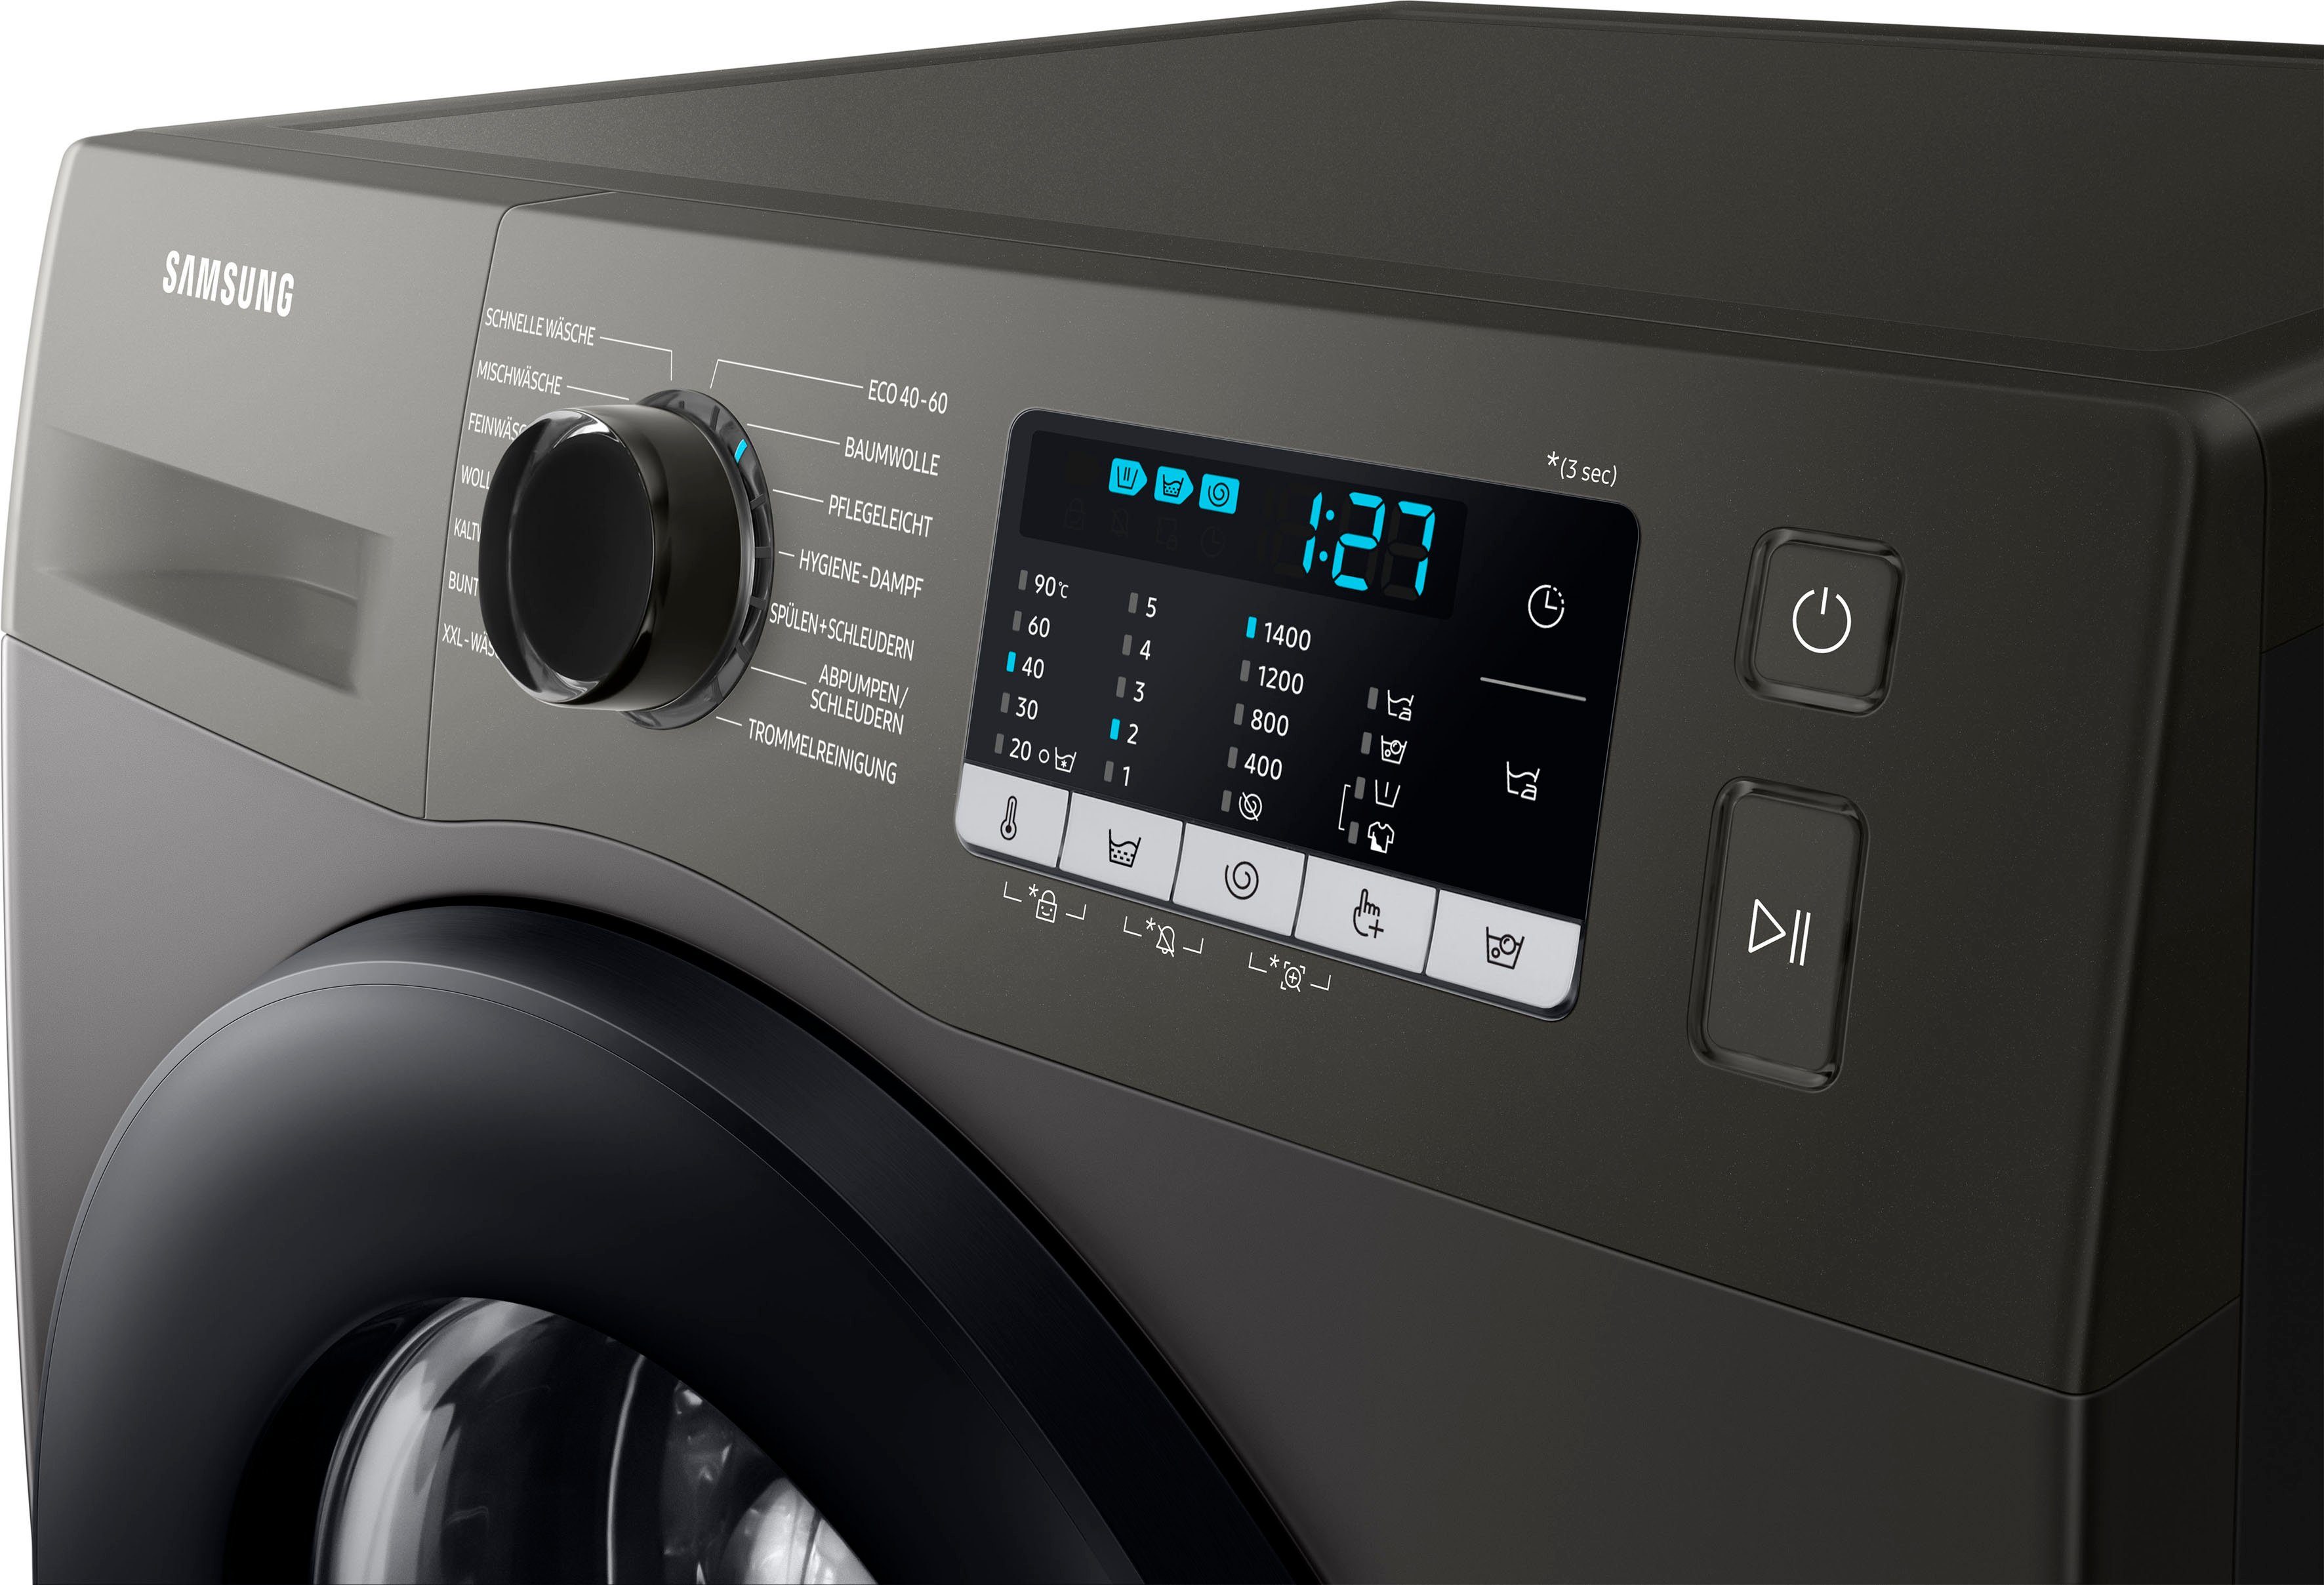 Samsung Waschmaschine WW5000T 7 kg, U/min, WW70TA049AX, 1400 FleckenIntensiv-Funktion INOX